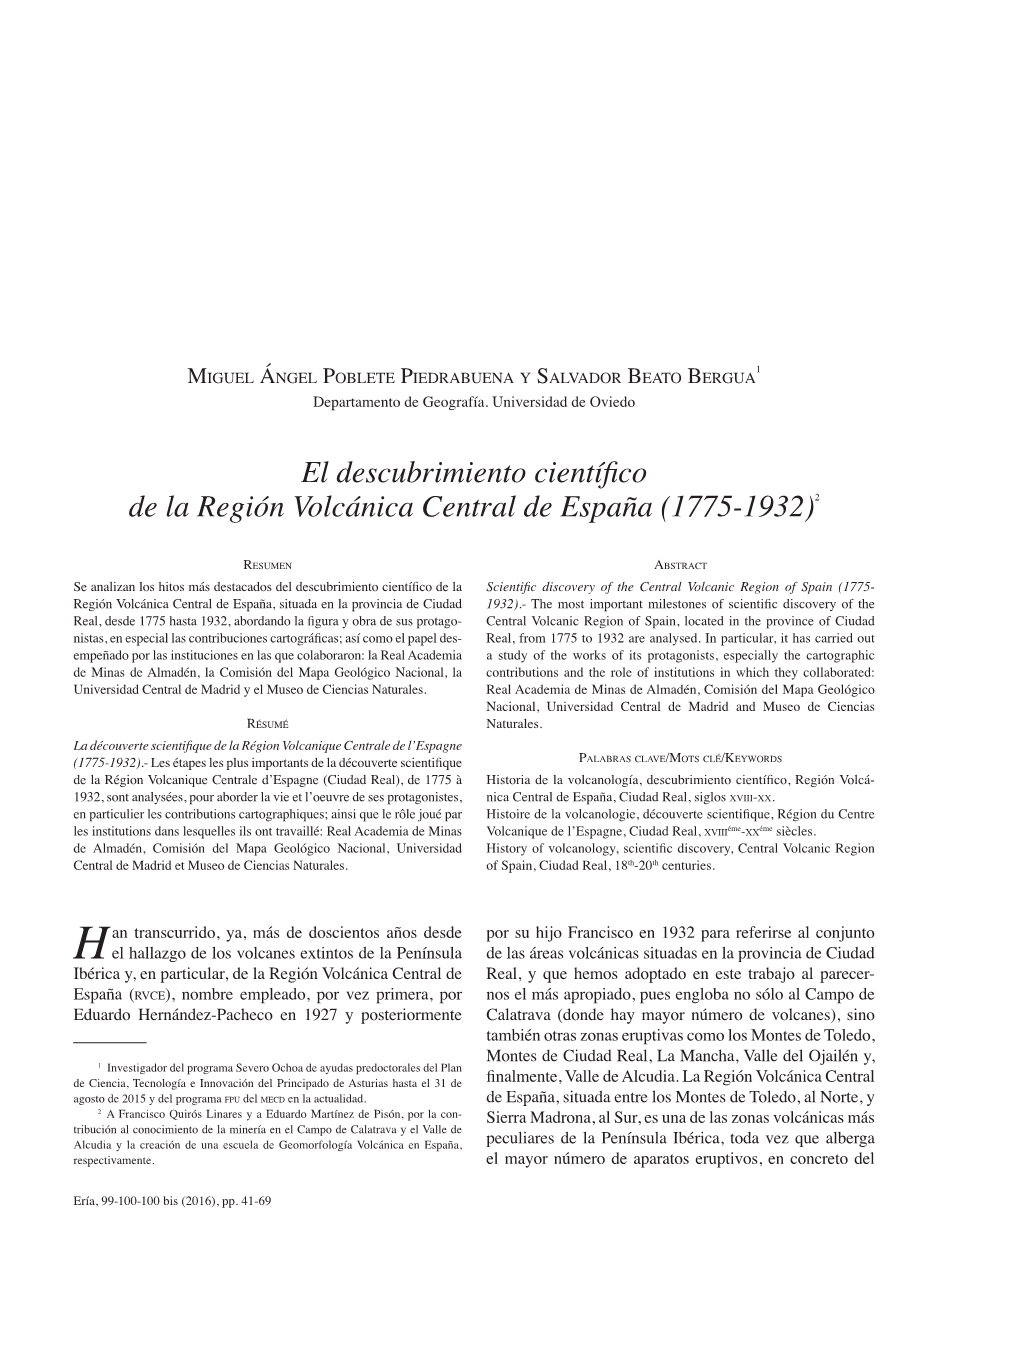 El Descubrimiento Científico De La Región Volcánica Central De España (1775-1932)2